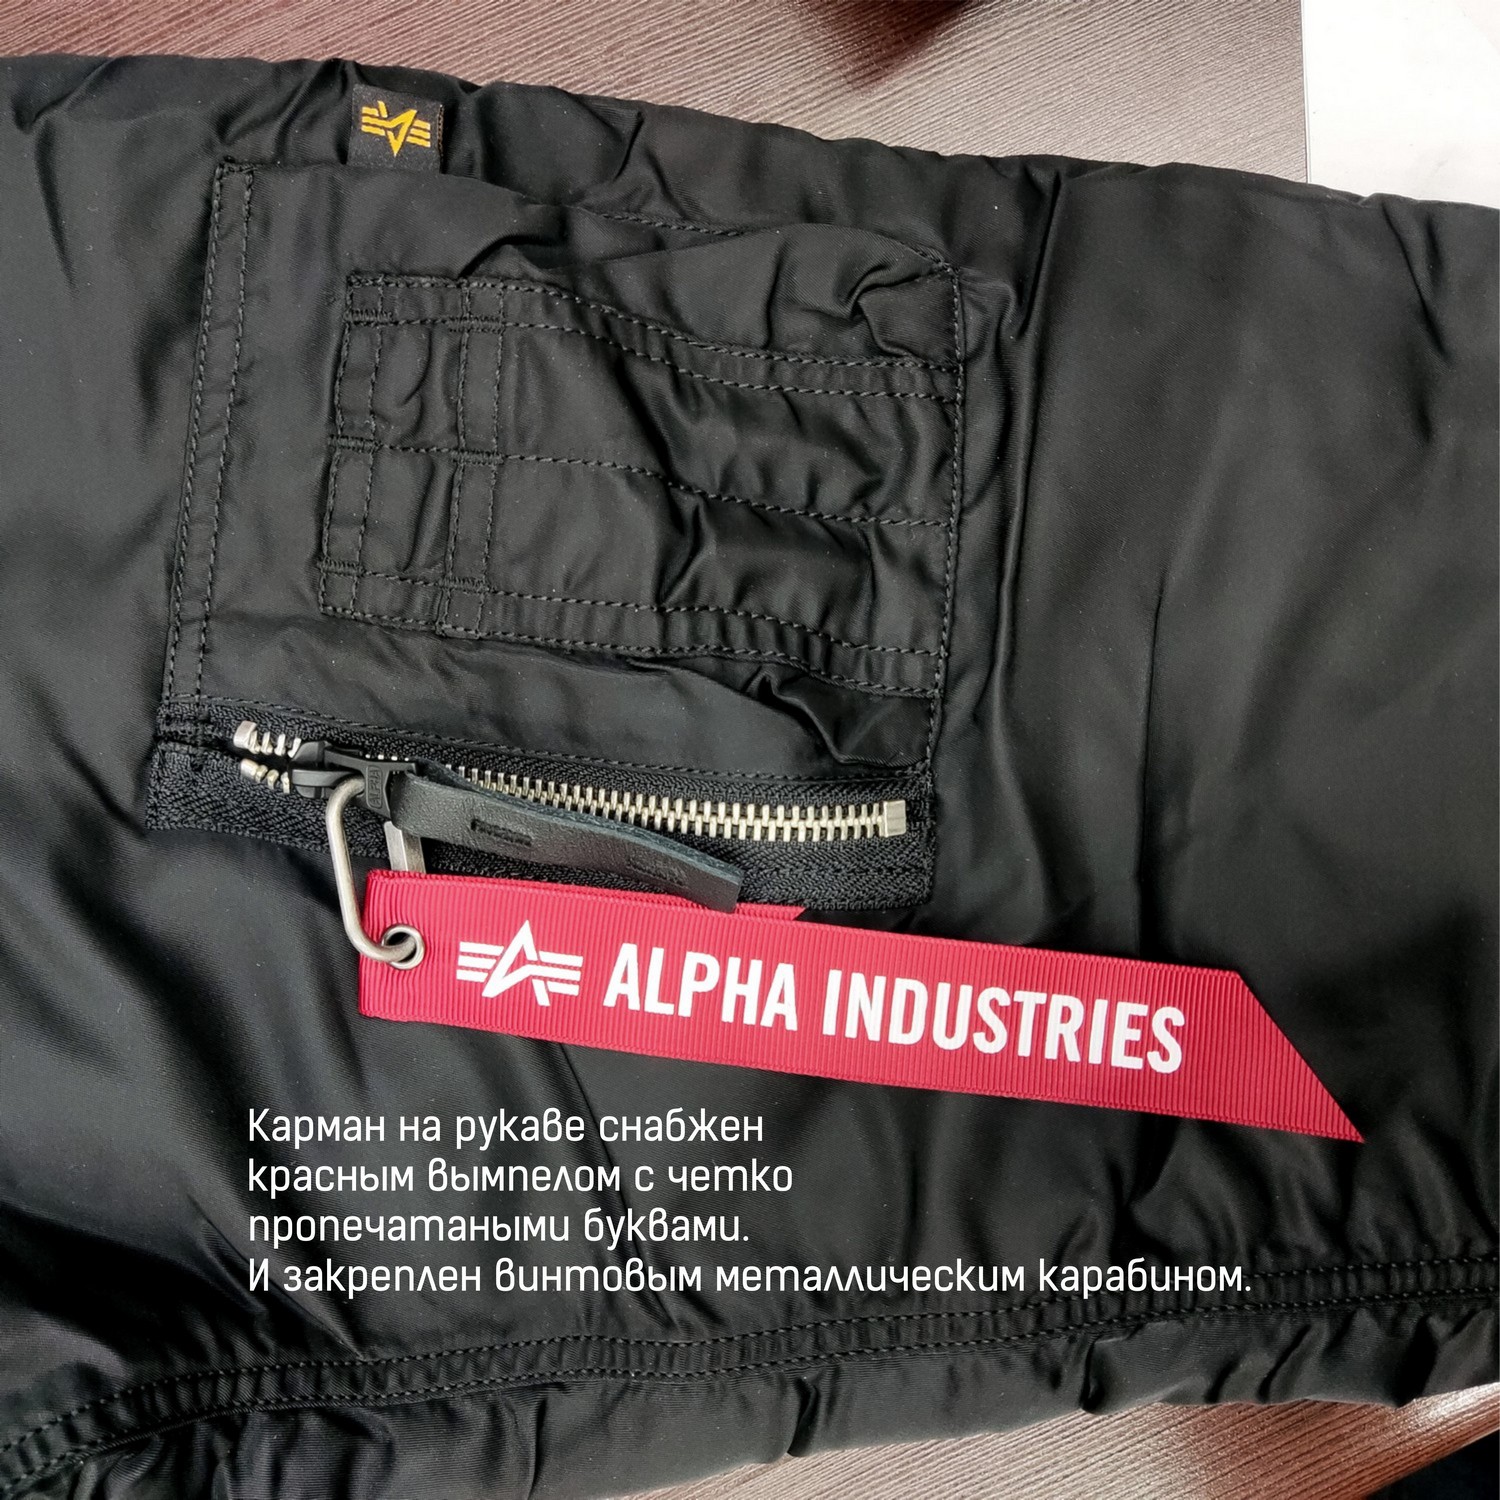 Alpha Industries вымпел описание